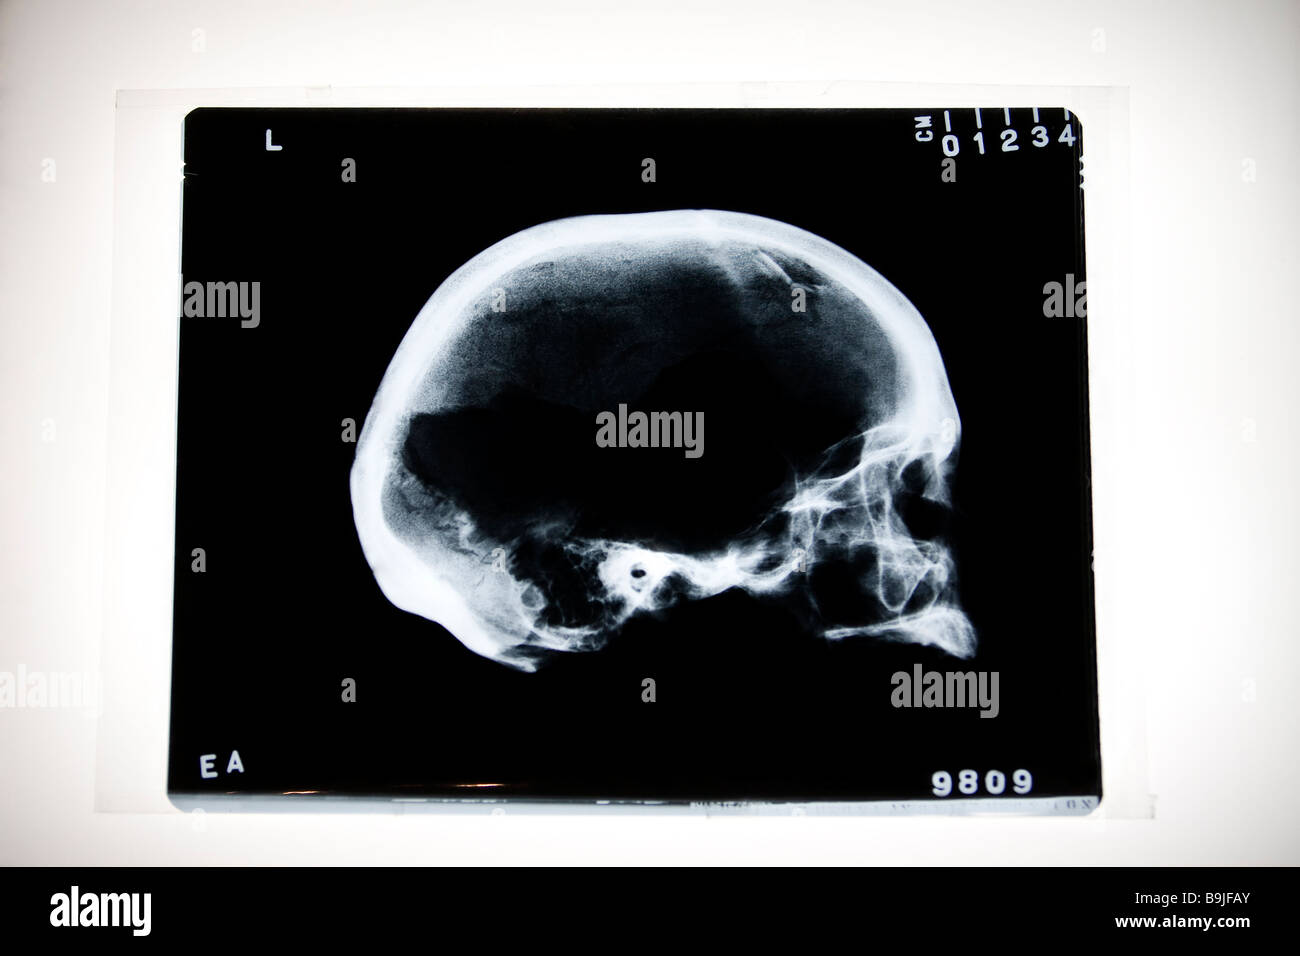 Raggi X del cranio umano con frattura smussato Foto Stock